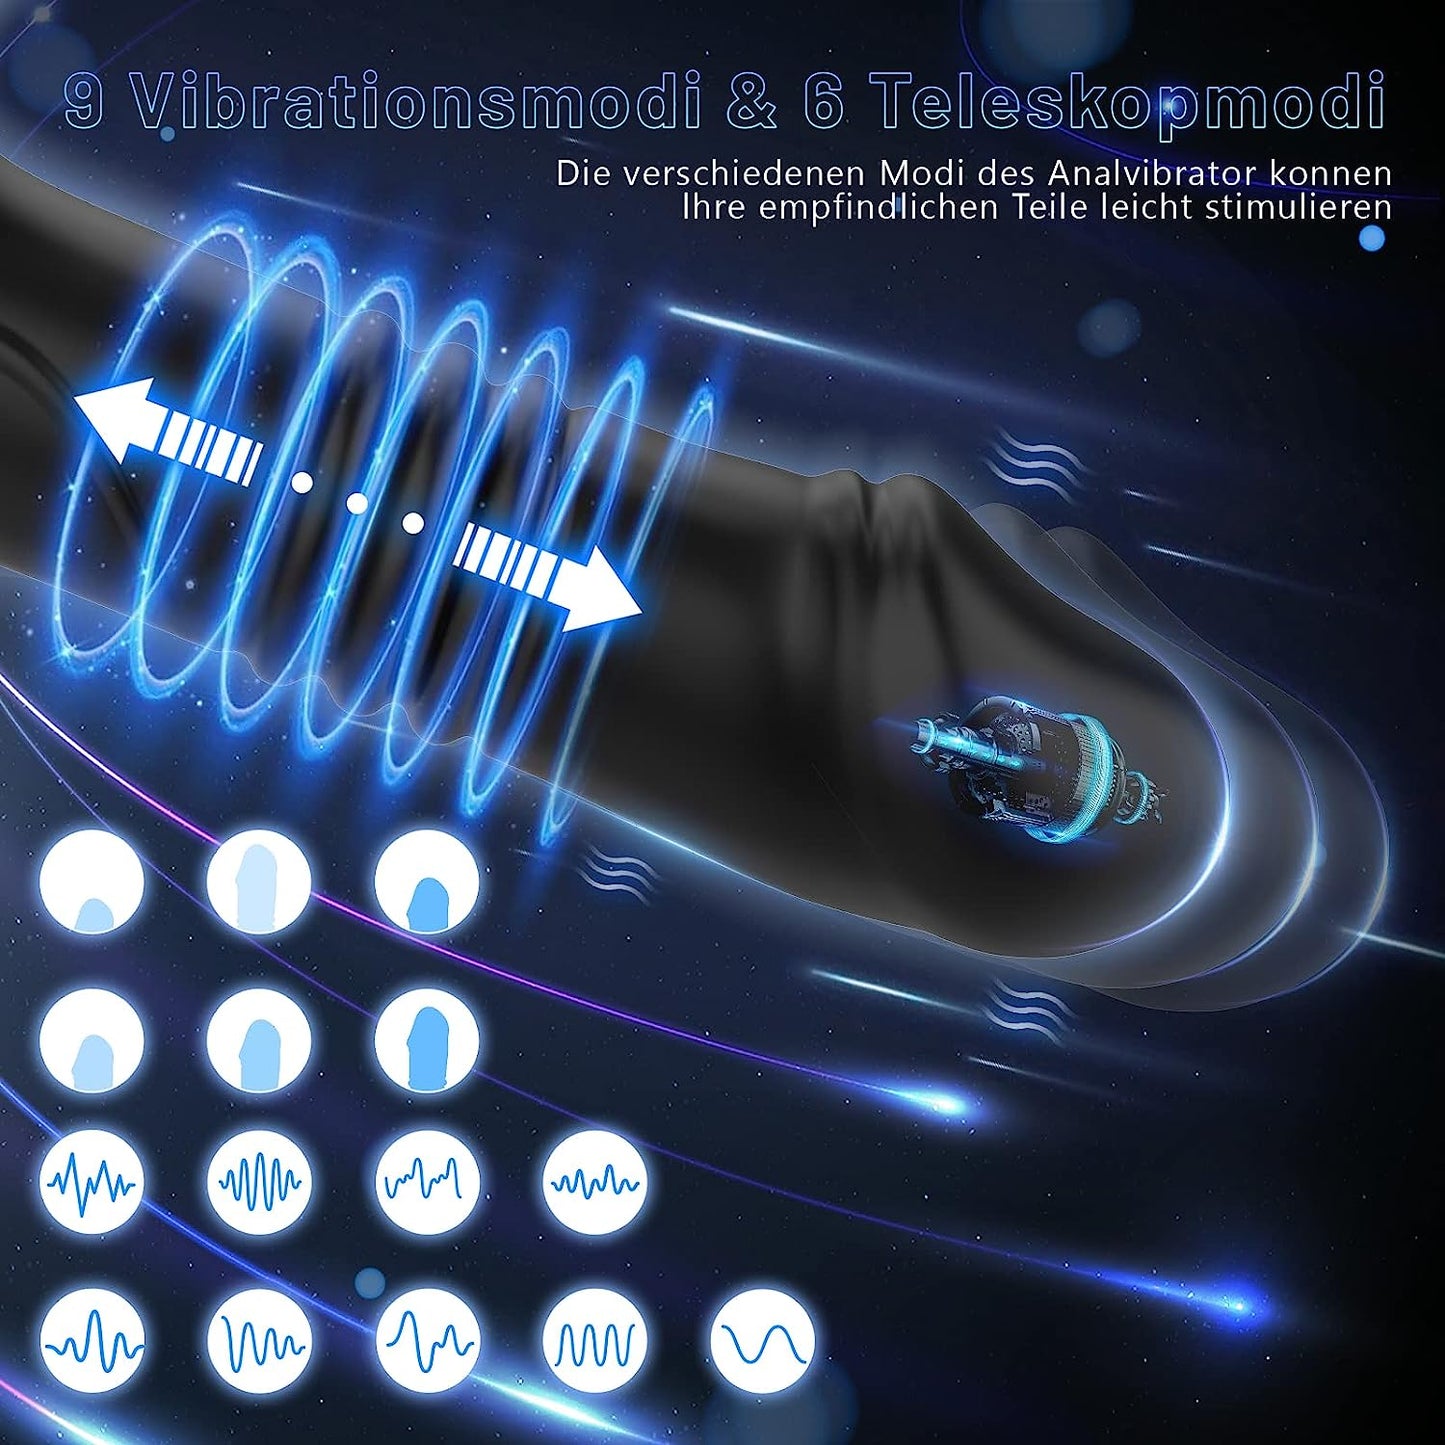 6 telescopische modi 9 vibratiemodi app anale vibrators groot met schokfunctie prostaatvibrator 